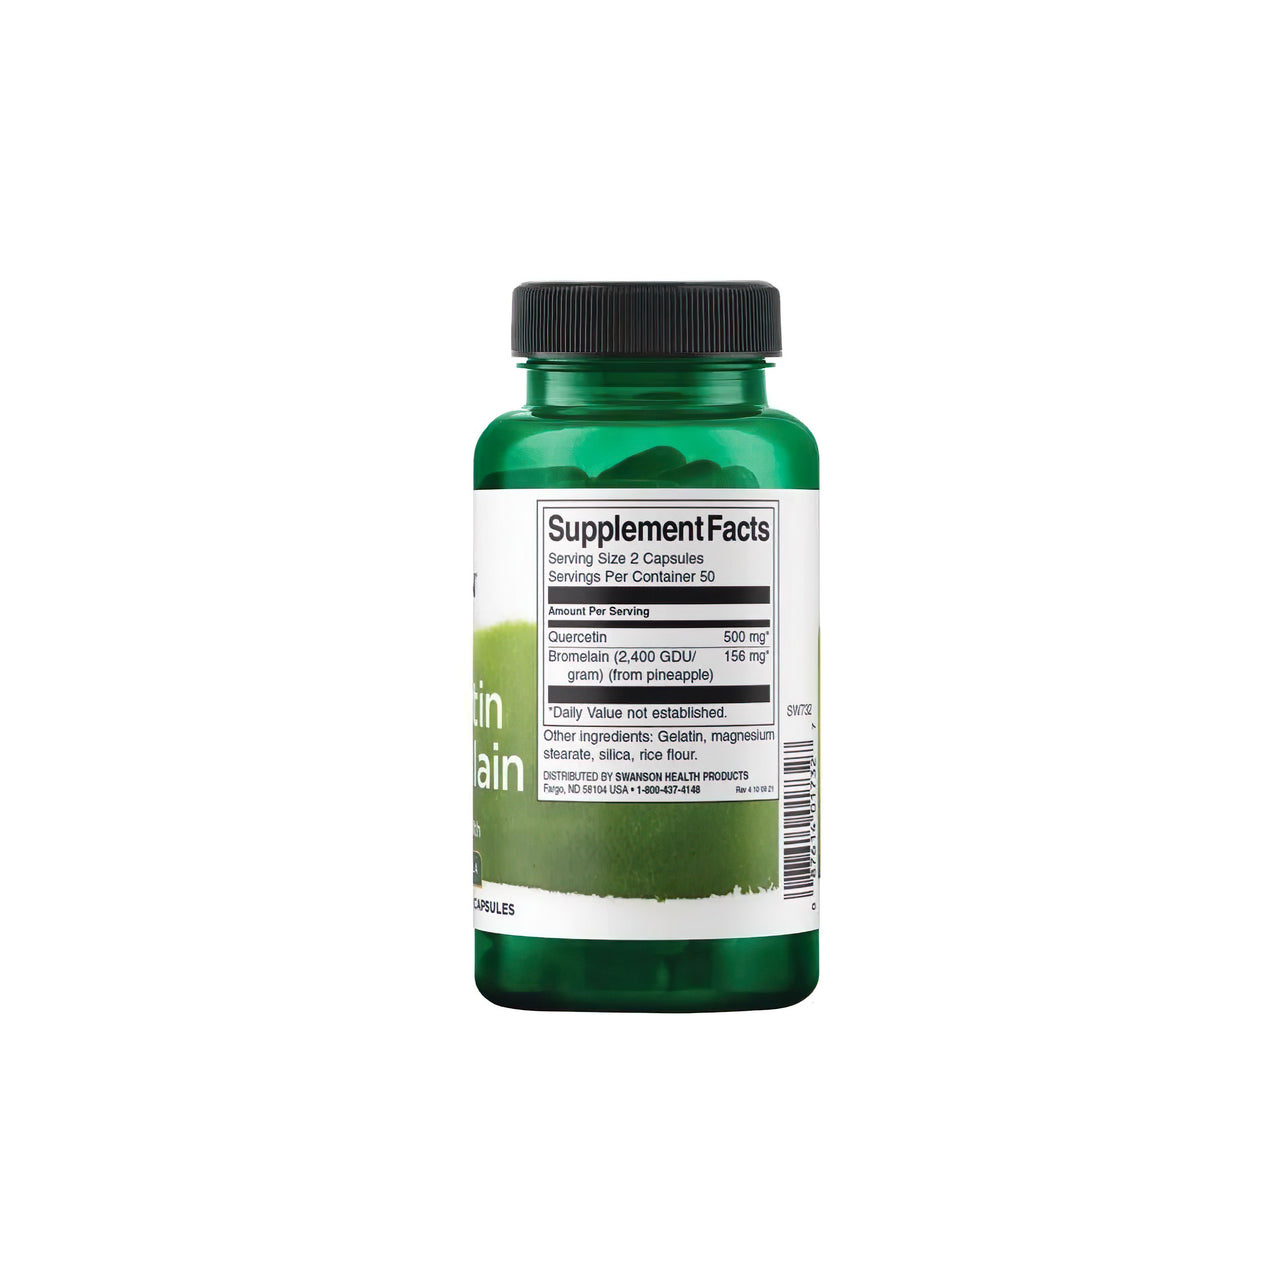 Eine Flasche Swanson's Quercetin mit Bromelain 100 Kapseln, ein wichtiger Nährstoff für das Immunsystem, auf einem weißen Hintergrund.